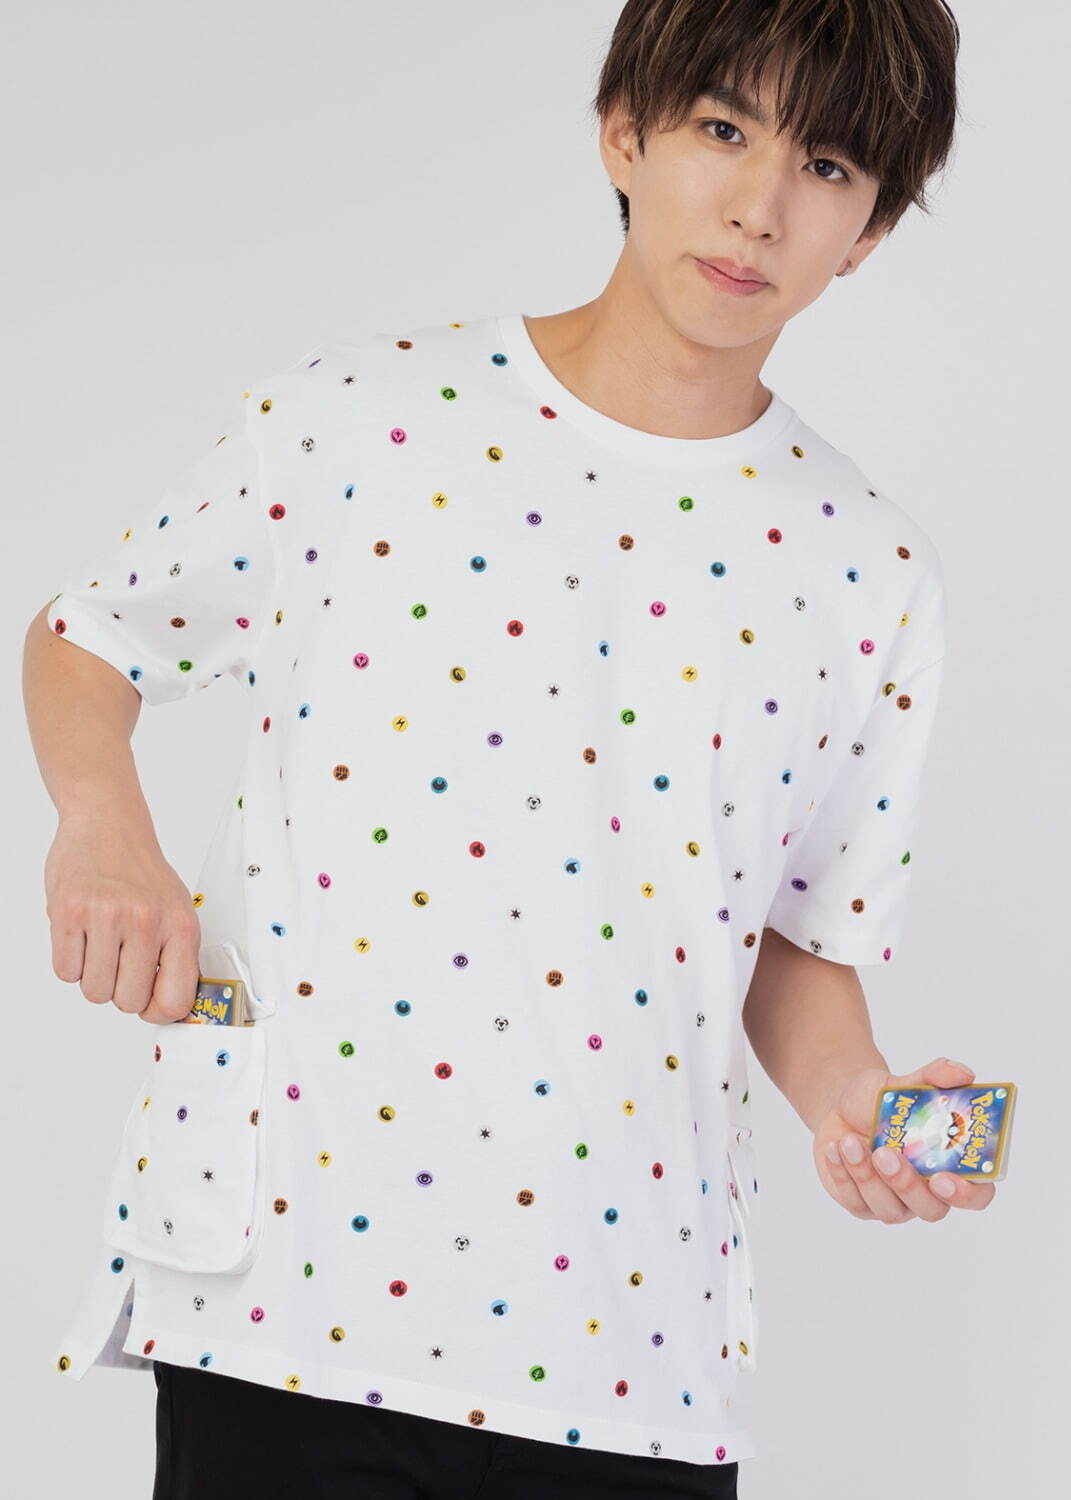 Tシャツ「タイプ パターン」3,500円